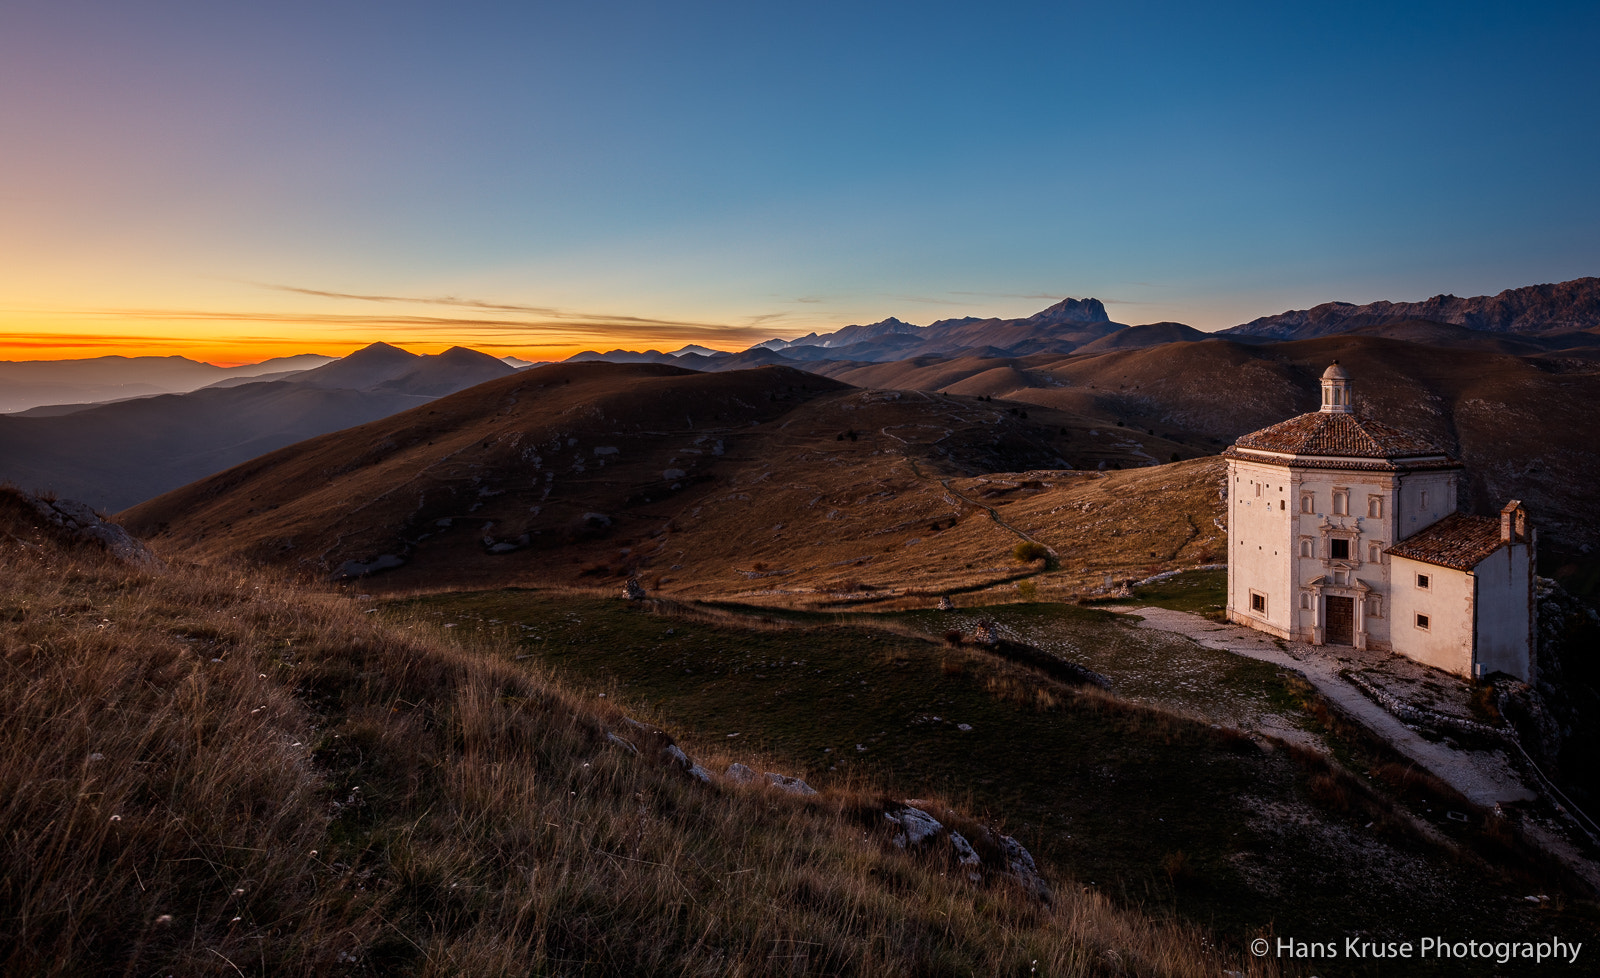 Canon EOS 5DS R sample photo. Sunset at rocca calascio with the small chapel santa maria della photography